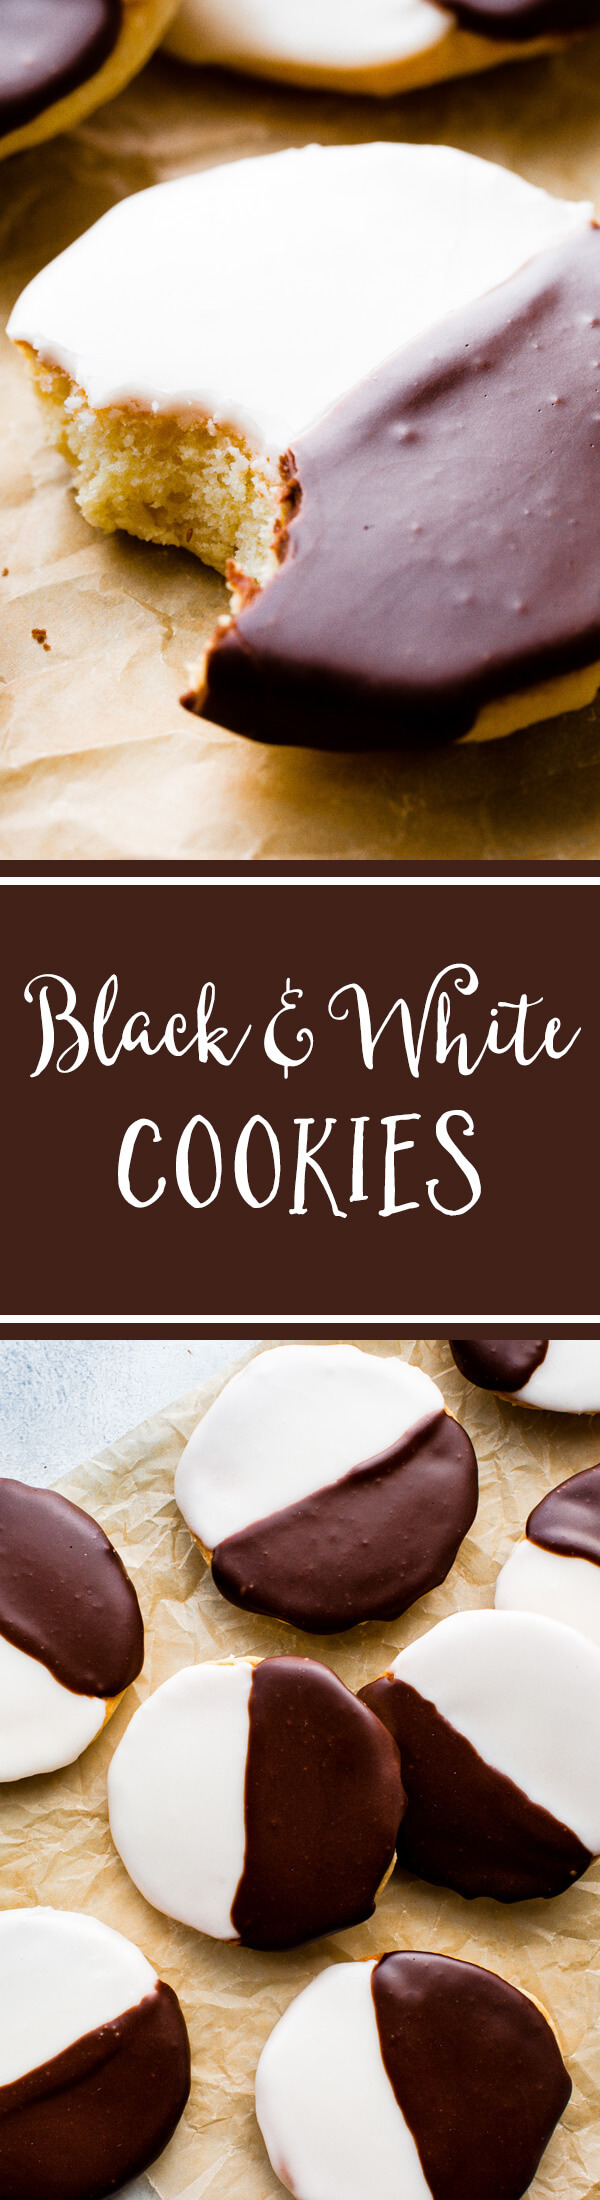 Une recette soigneusement testée et étonnamment simple pour des biscuits en noir et blanc à la new-yorkaise! Ces cookies en forme de gâteau sont irrésistibles! Recette sur sallysbakingaddiction.com